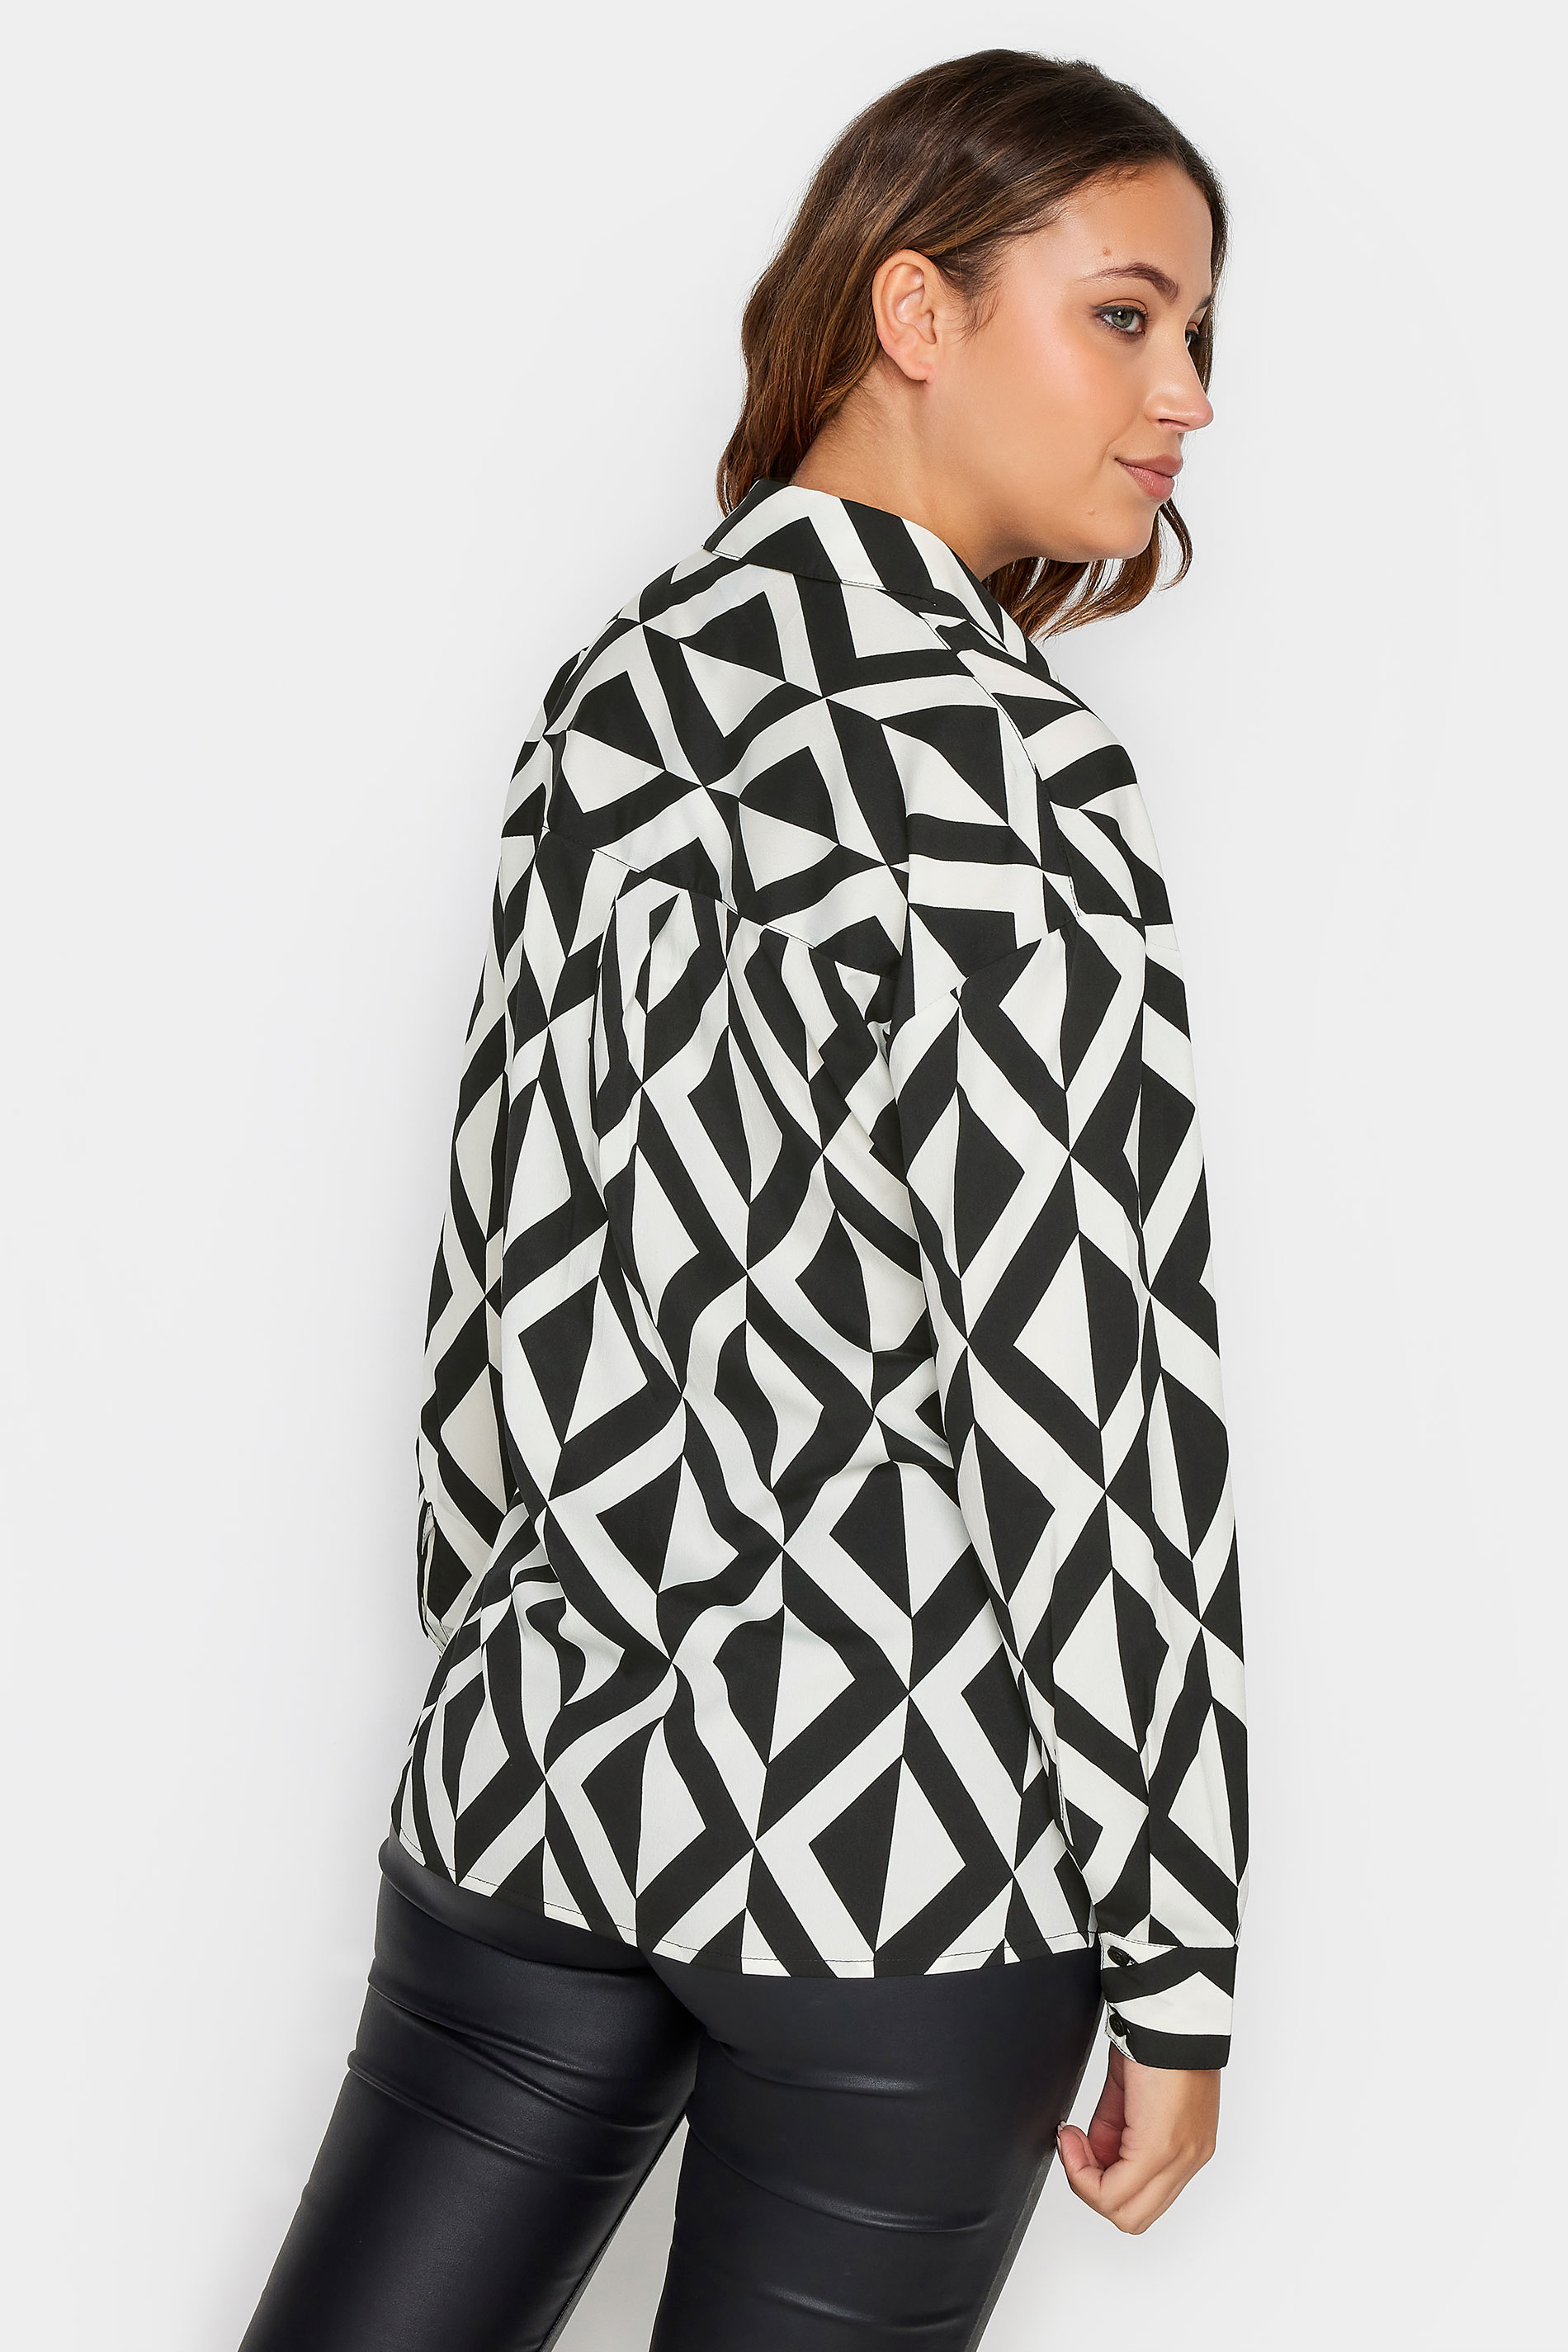 LTS Tall Black & White Geometric Print Shirt | Long Tall Sally 3